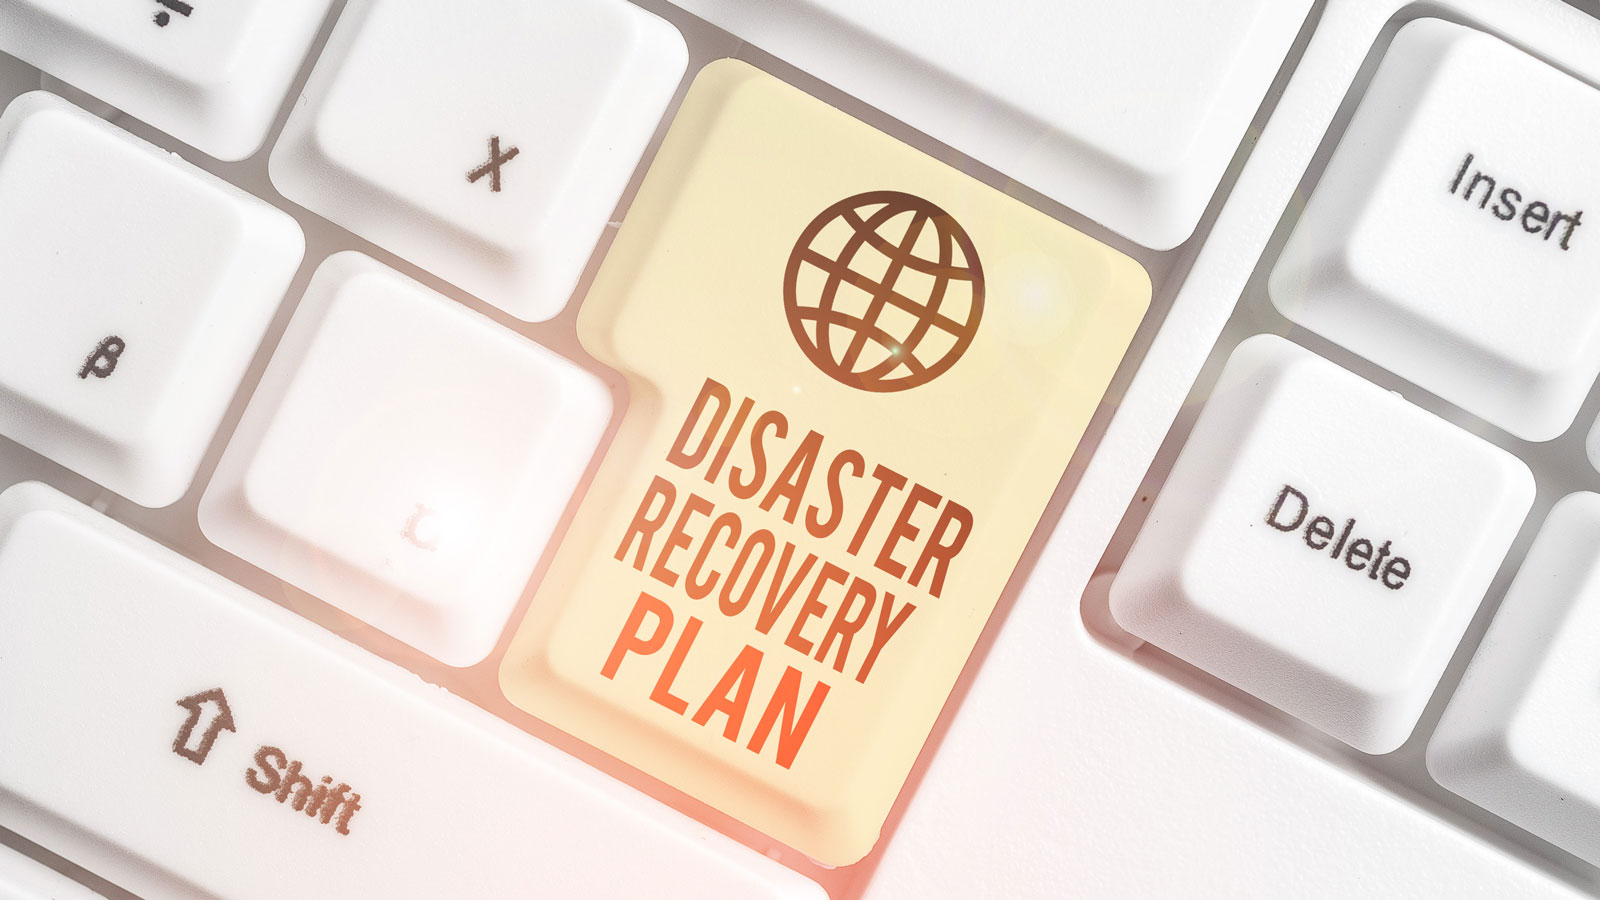 Tastatur med Disaster recovery Plan knapp